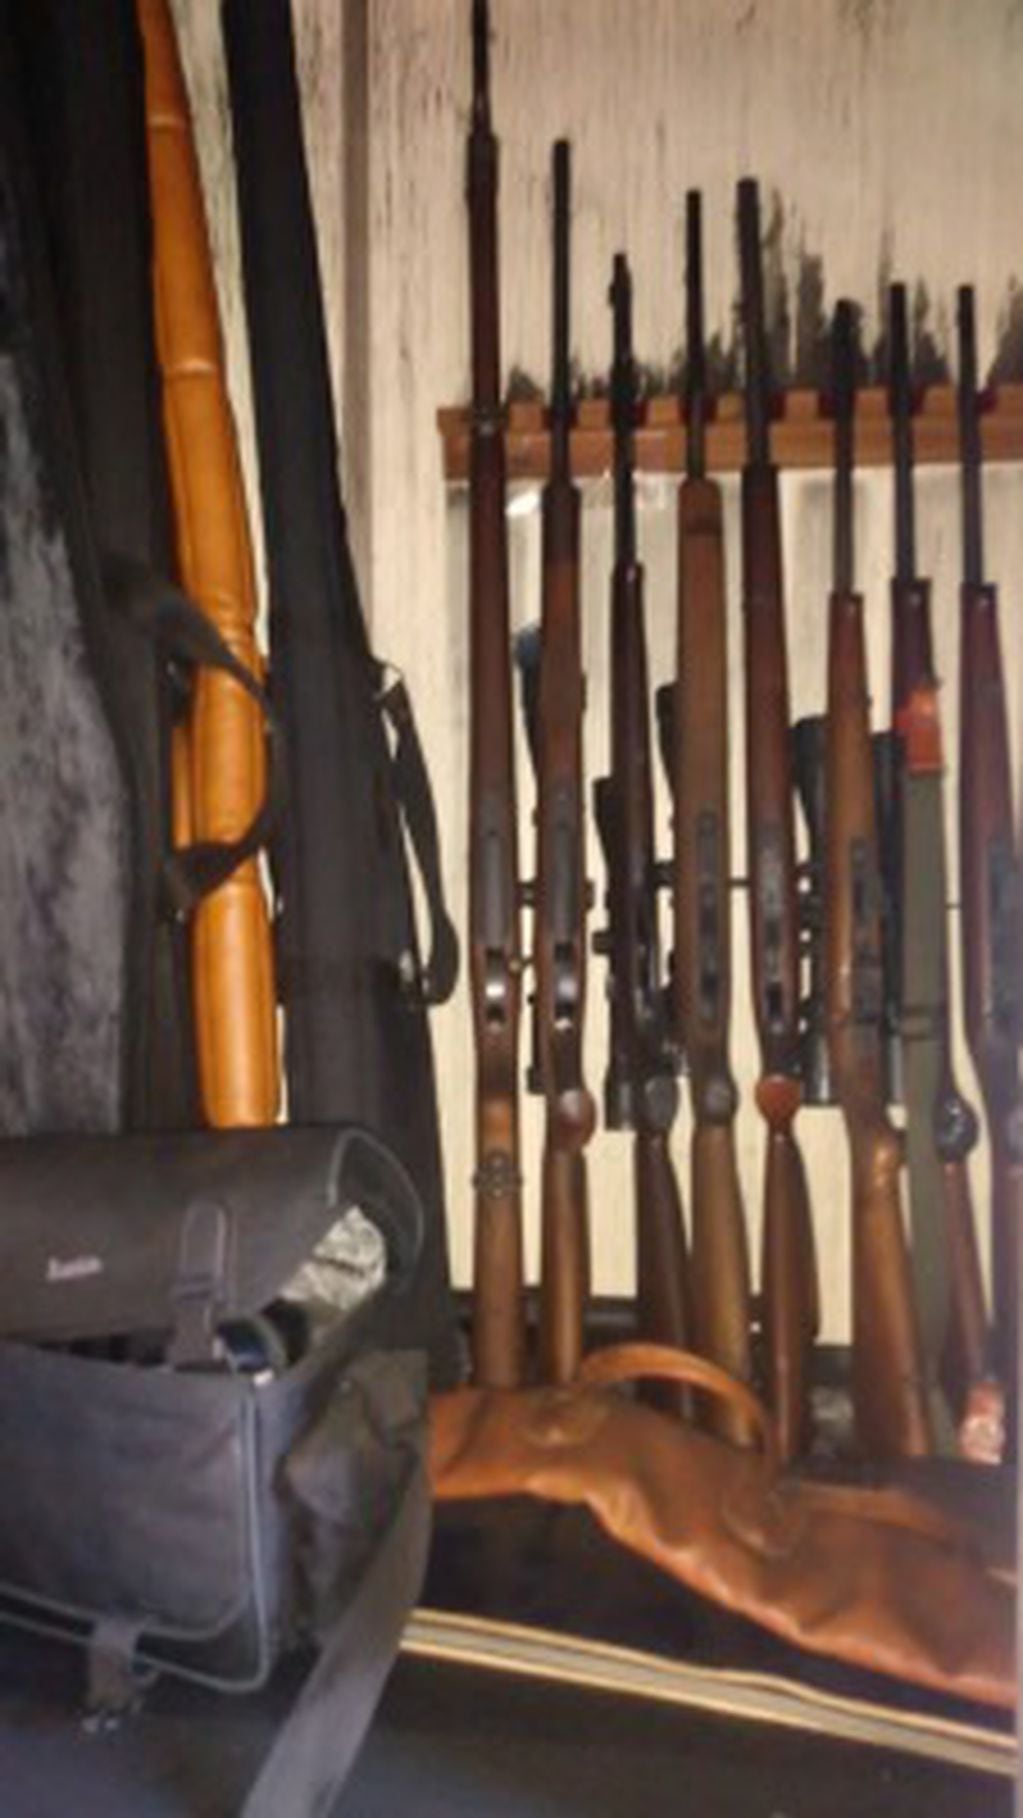 Las armas incautadas incluyen 54 armas de puño y 21 fusiles
(Telam)